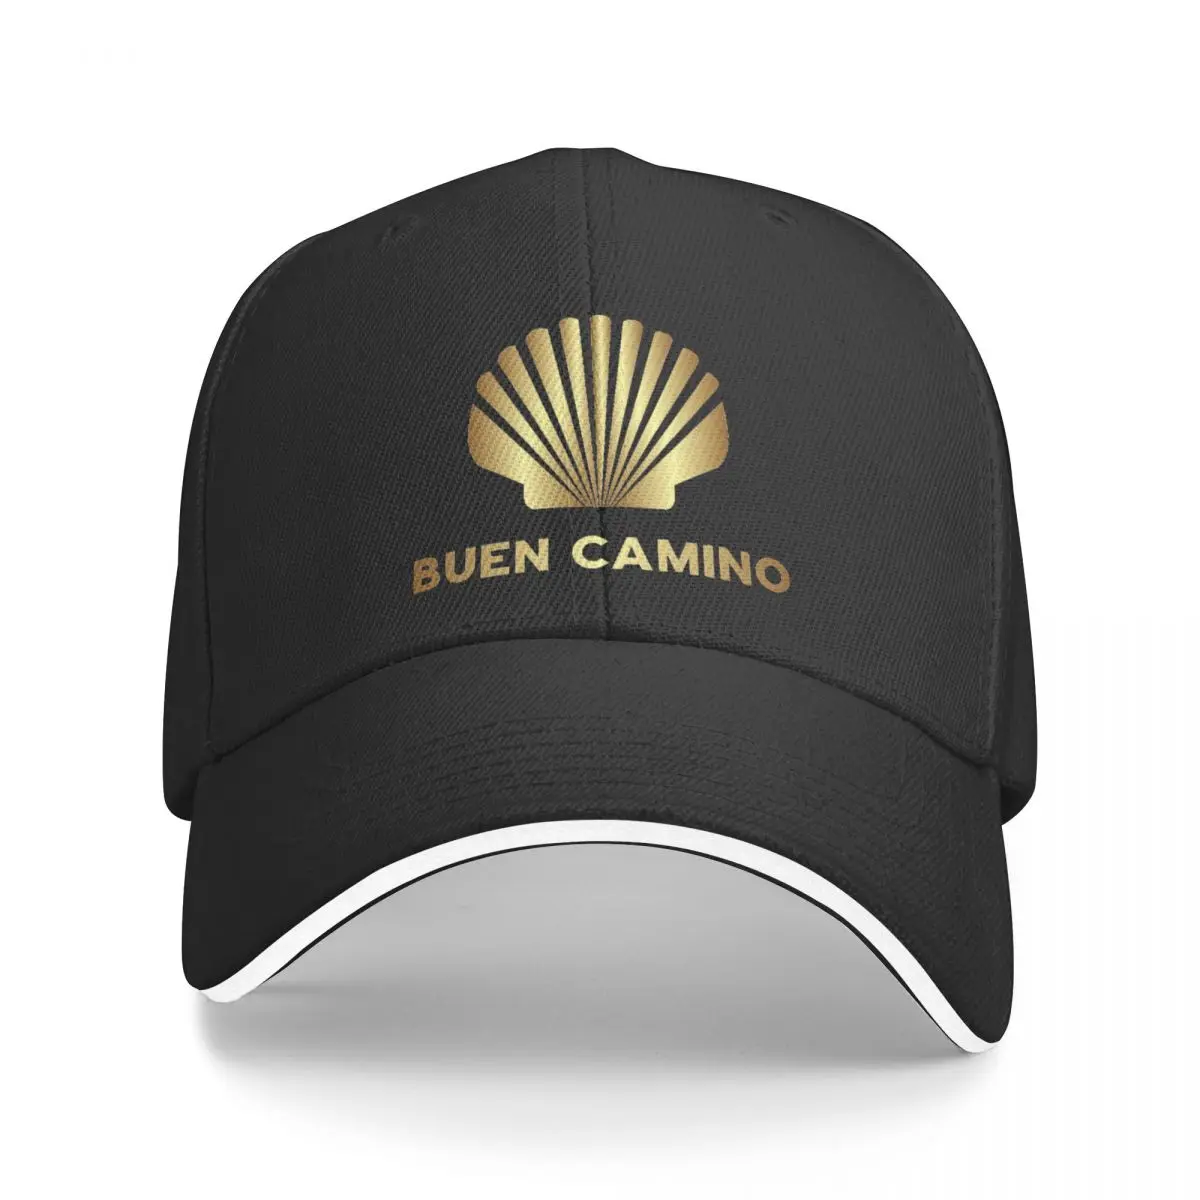 Новая бейсболка Buen Camino Shell для косплея с защитой от ультрафиолета, солнечная шляпа boonie hats, милая бейсболка для мужчин и женщин